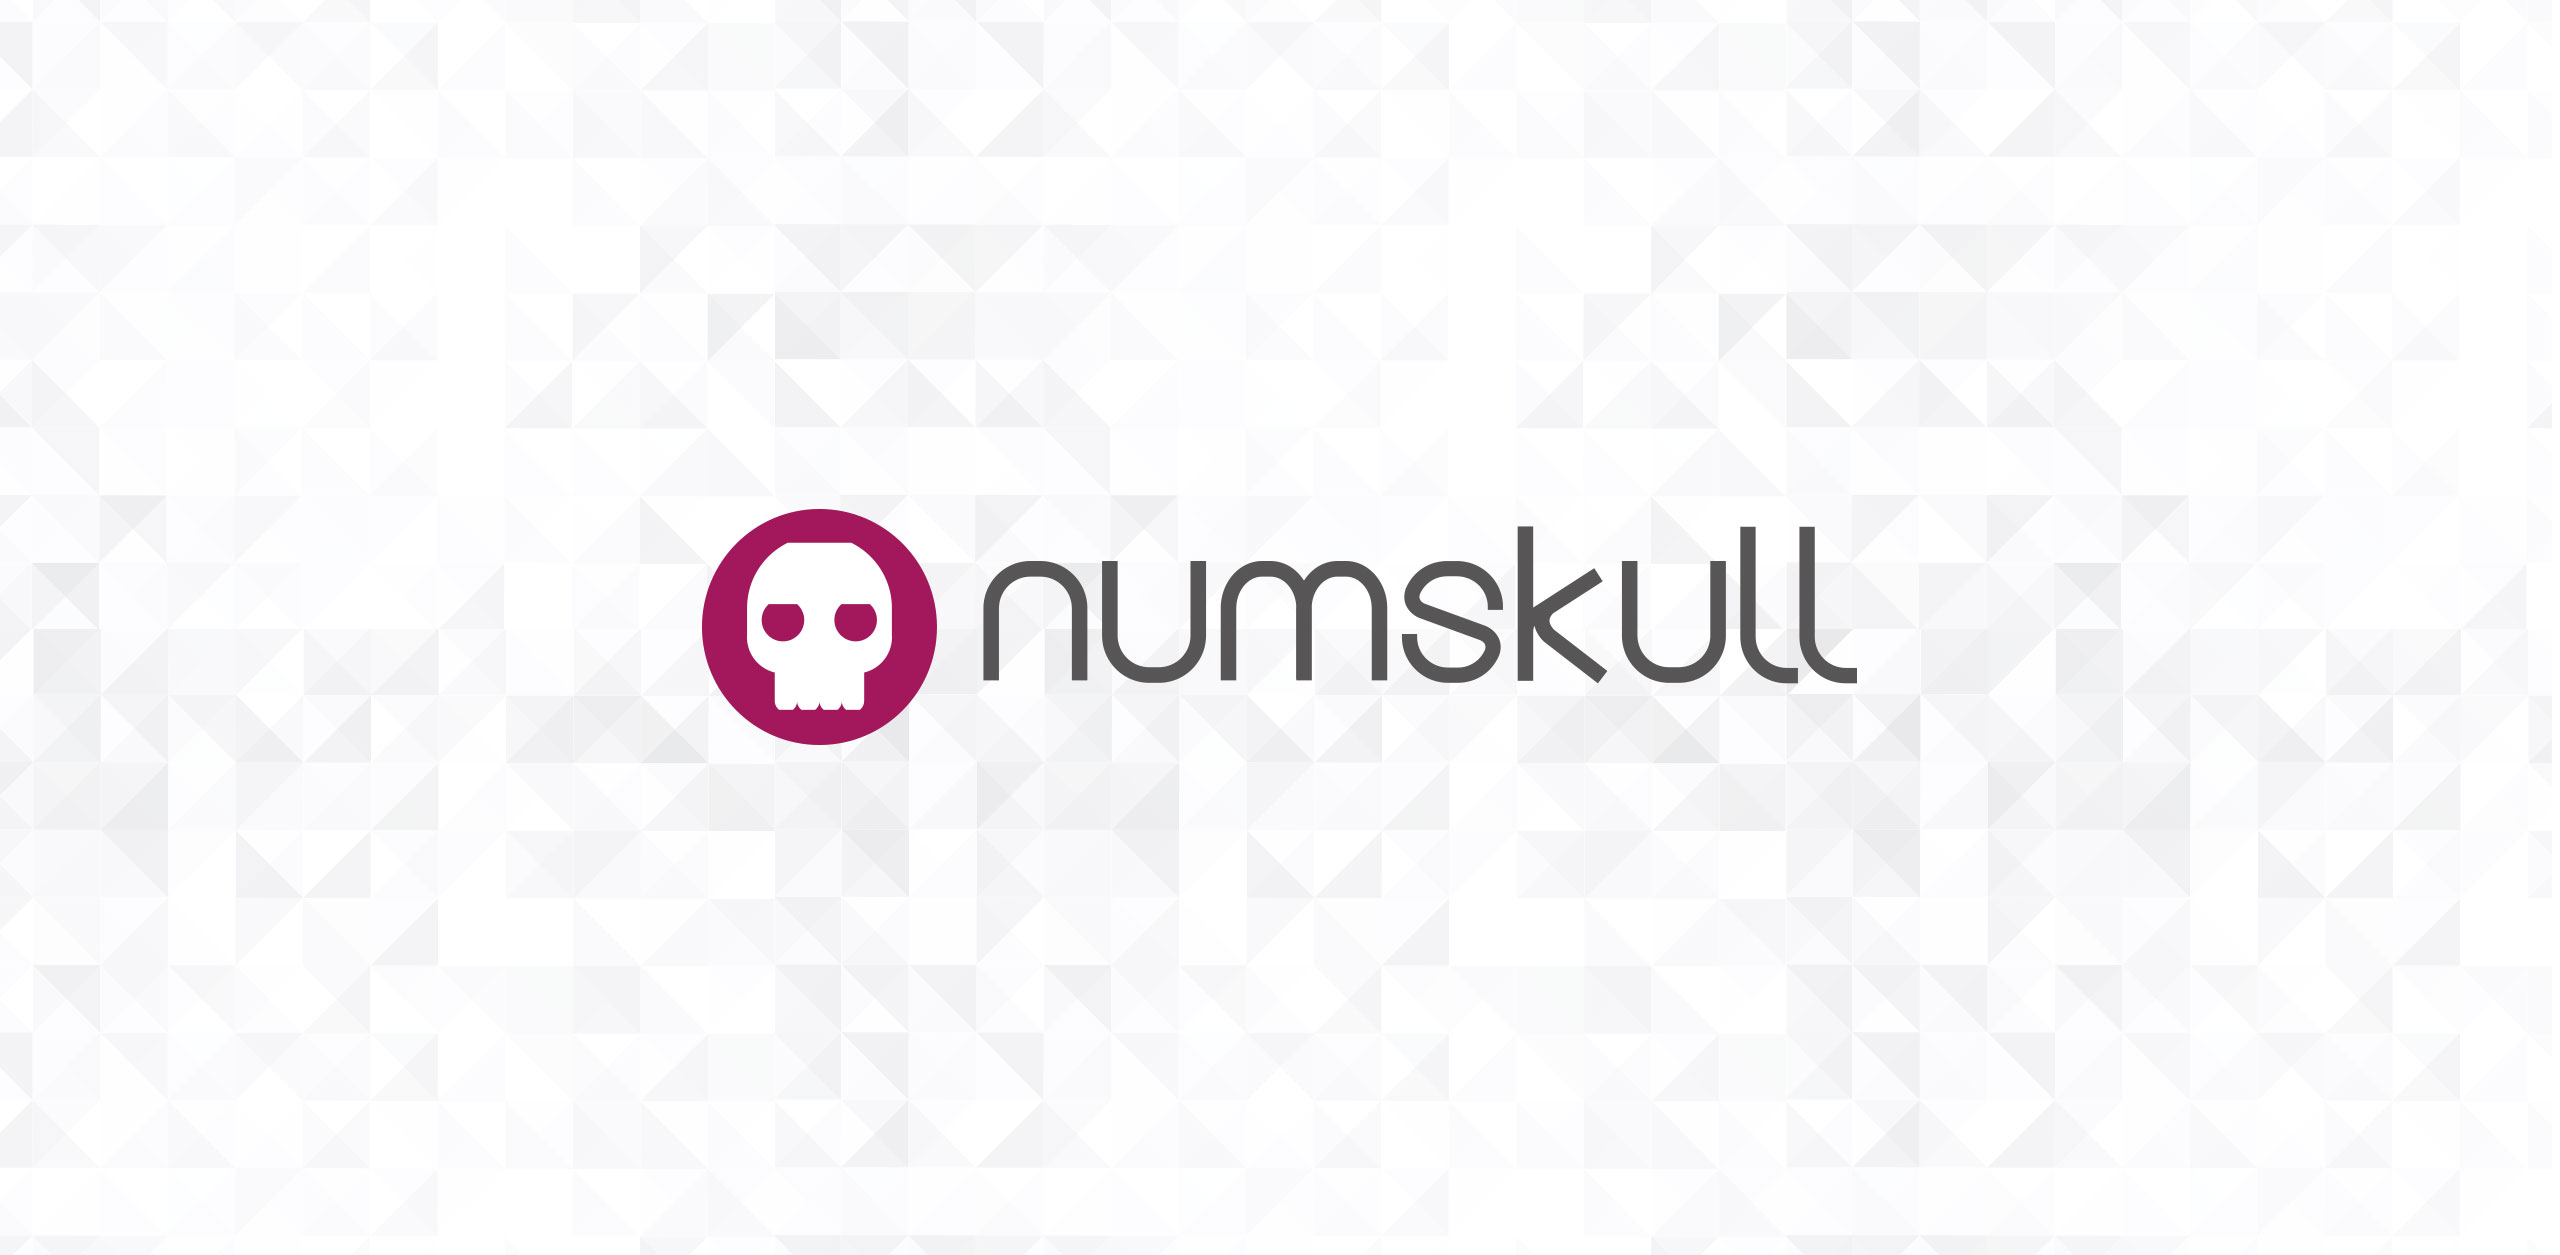 Numskull Designs